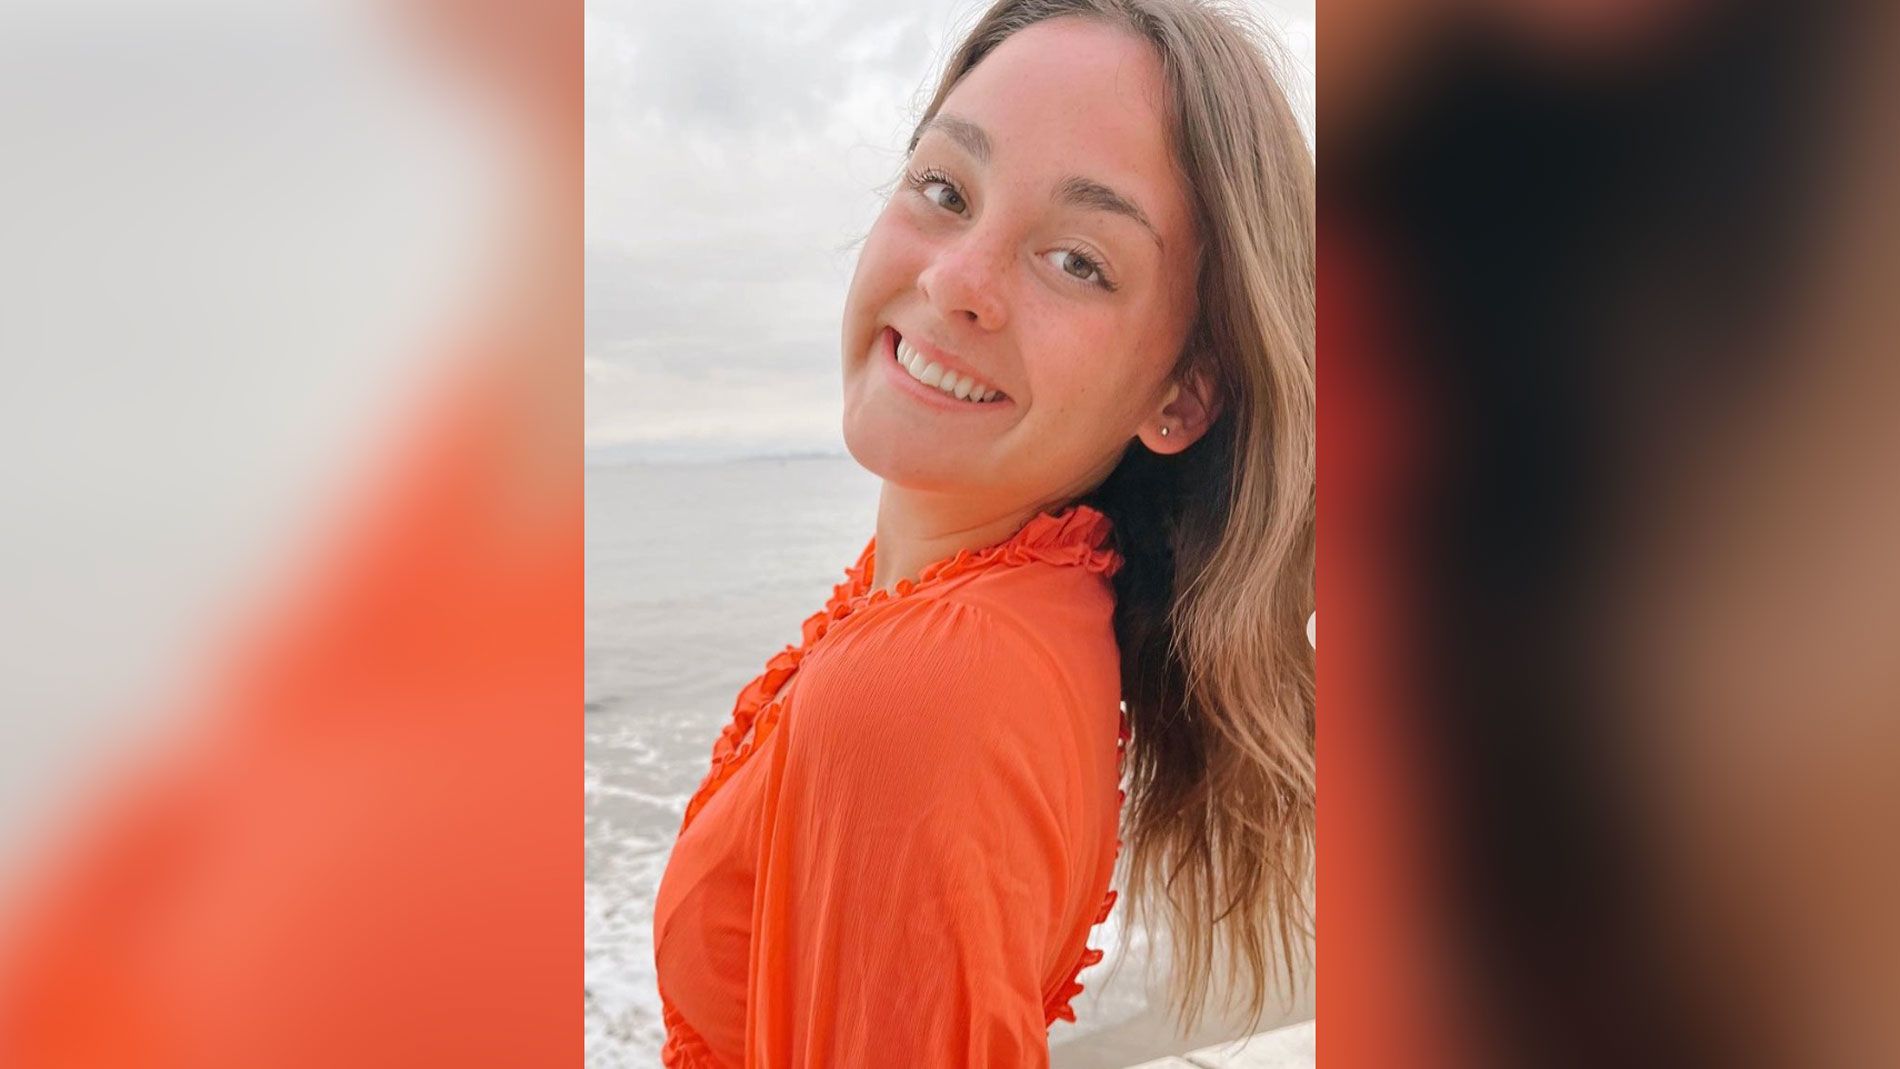 Idaho murders victim: Who is Xana Kernodle?